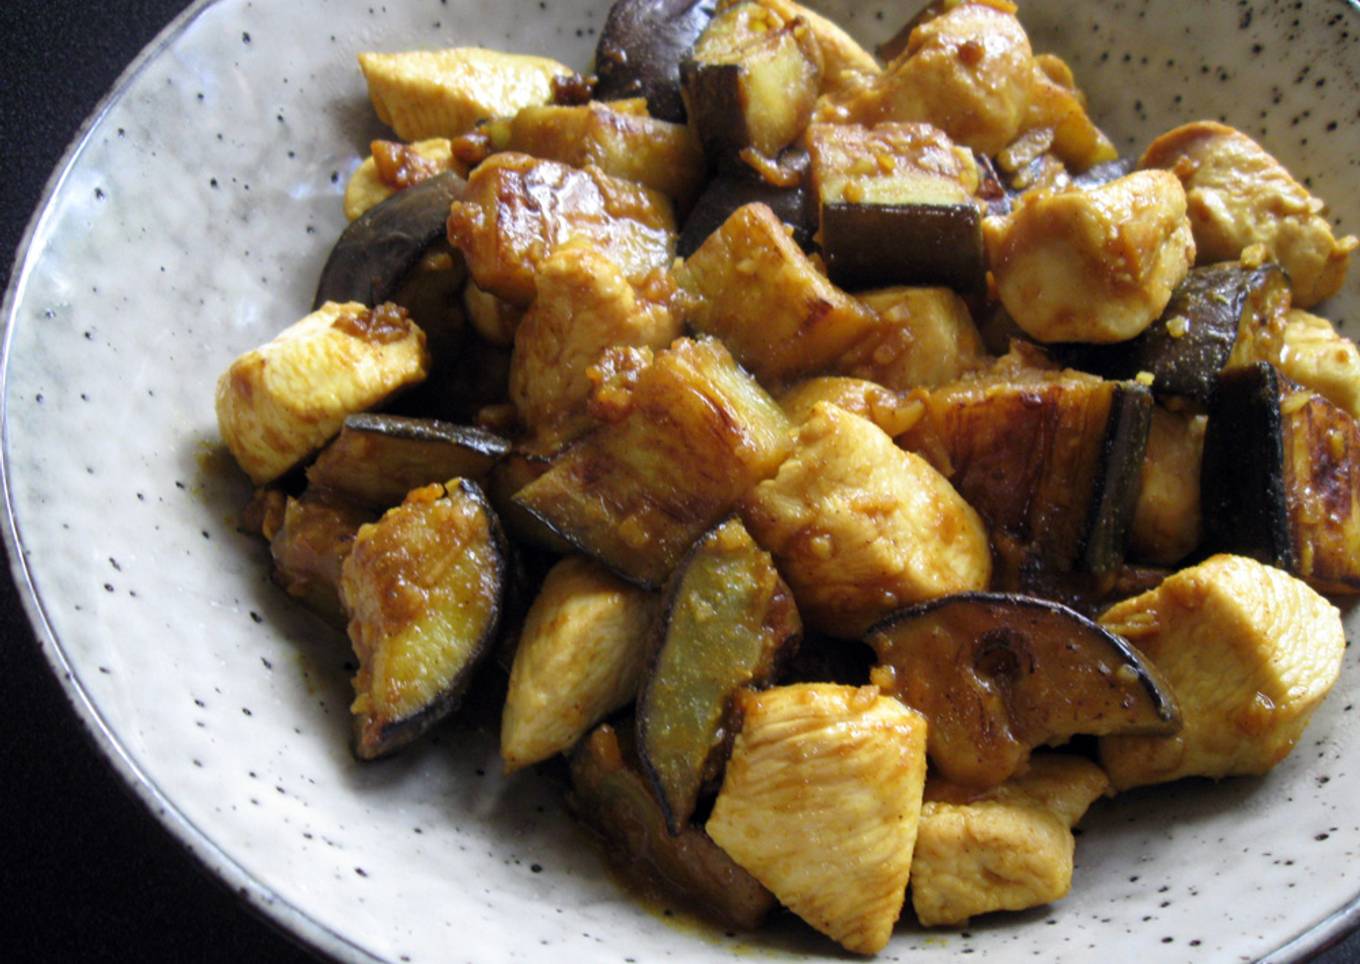 Curry Flavoured Stir-fried Eggplant & Chicken